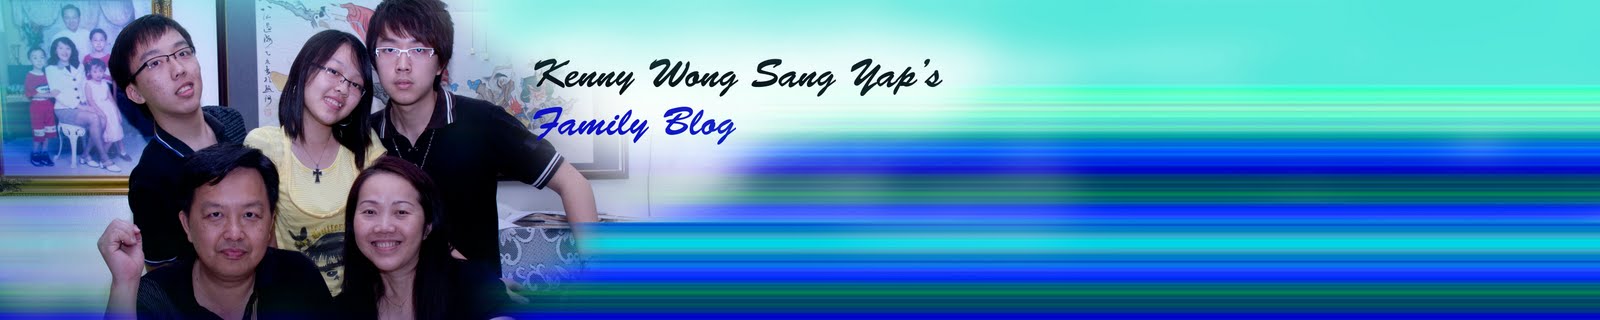 Kenny Wong Sang Yap 's Family Blog